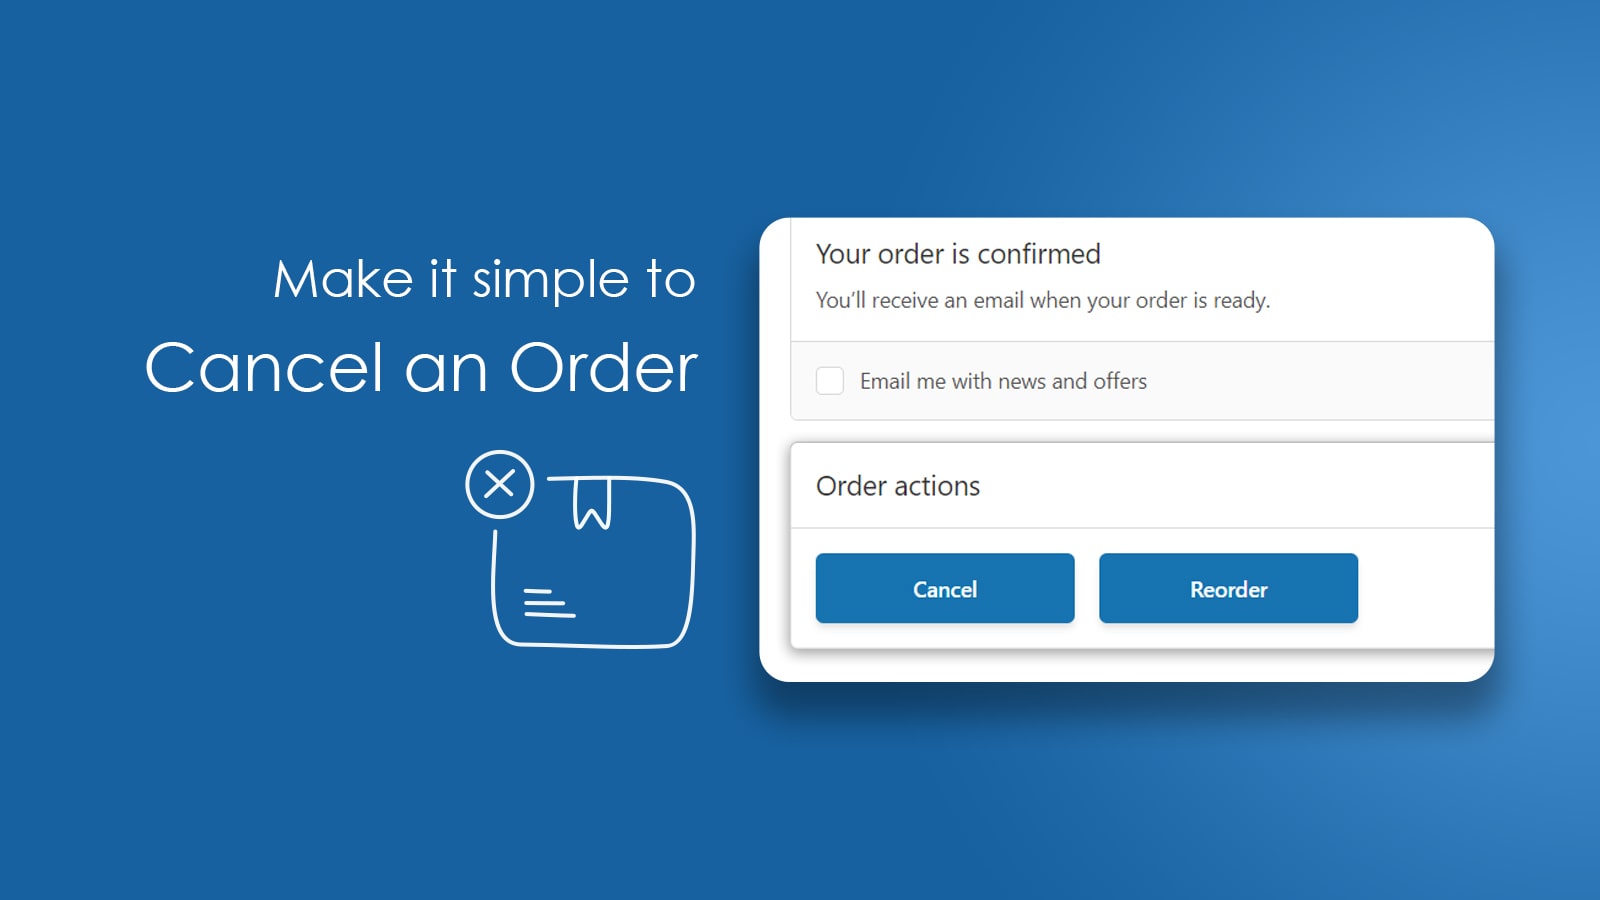 Forenkle ordreannullering - Codify Order Cancel